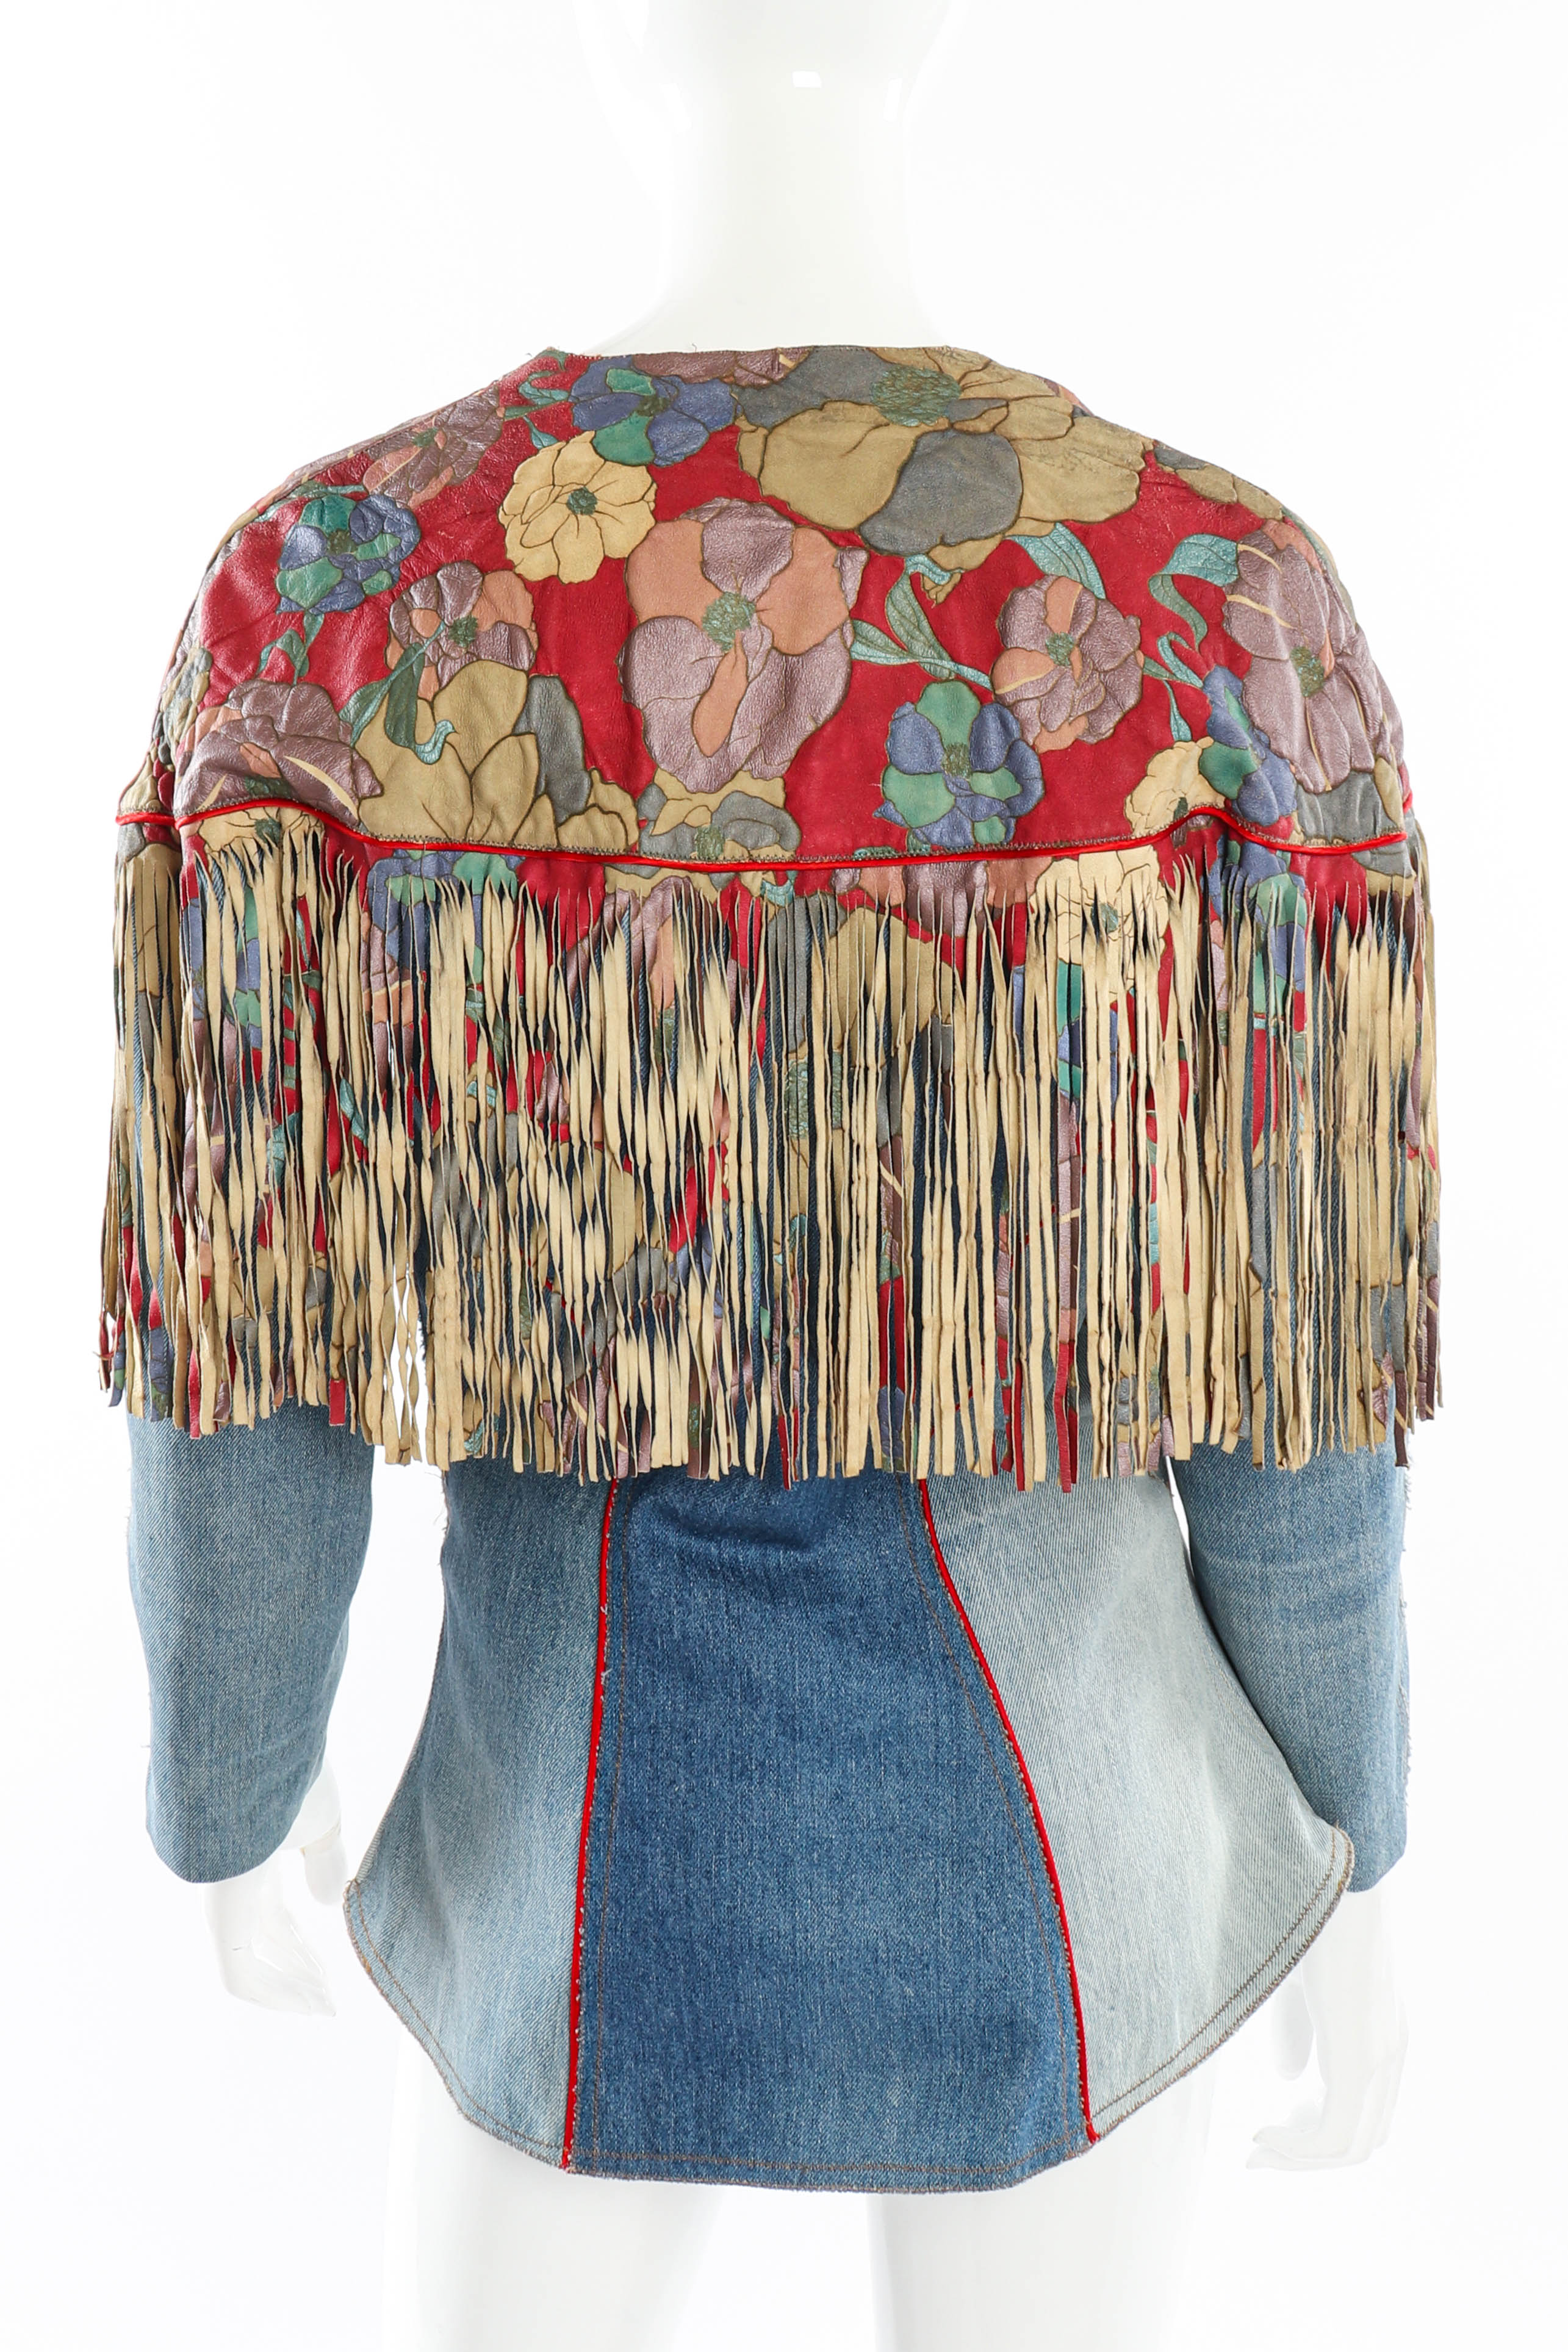 Vintage Roberto Cavalli Floral Denim and Leather Fringe Jacket back on mannequin @recessla